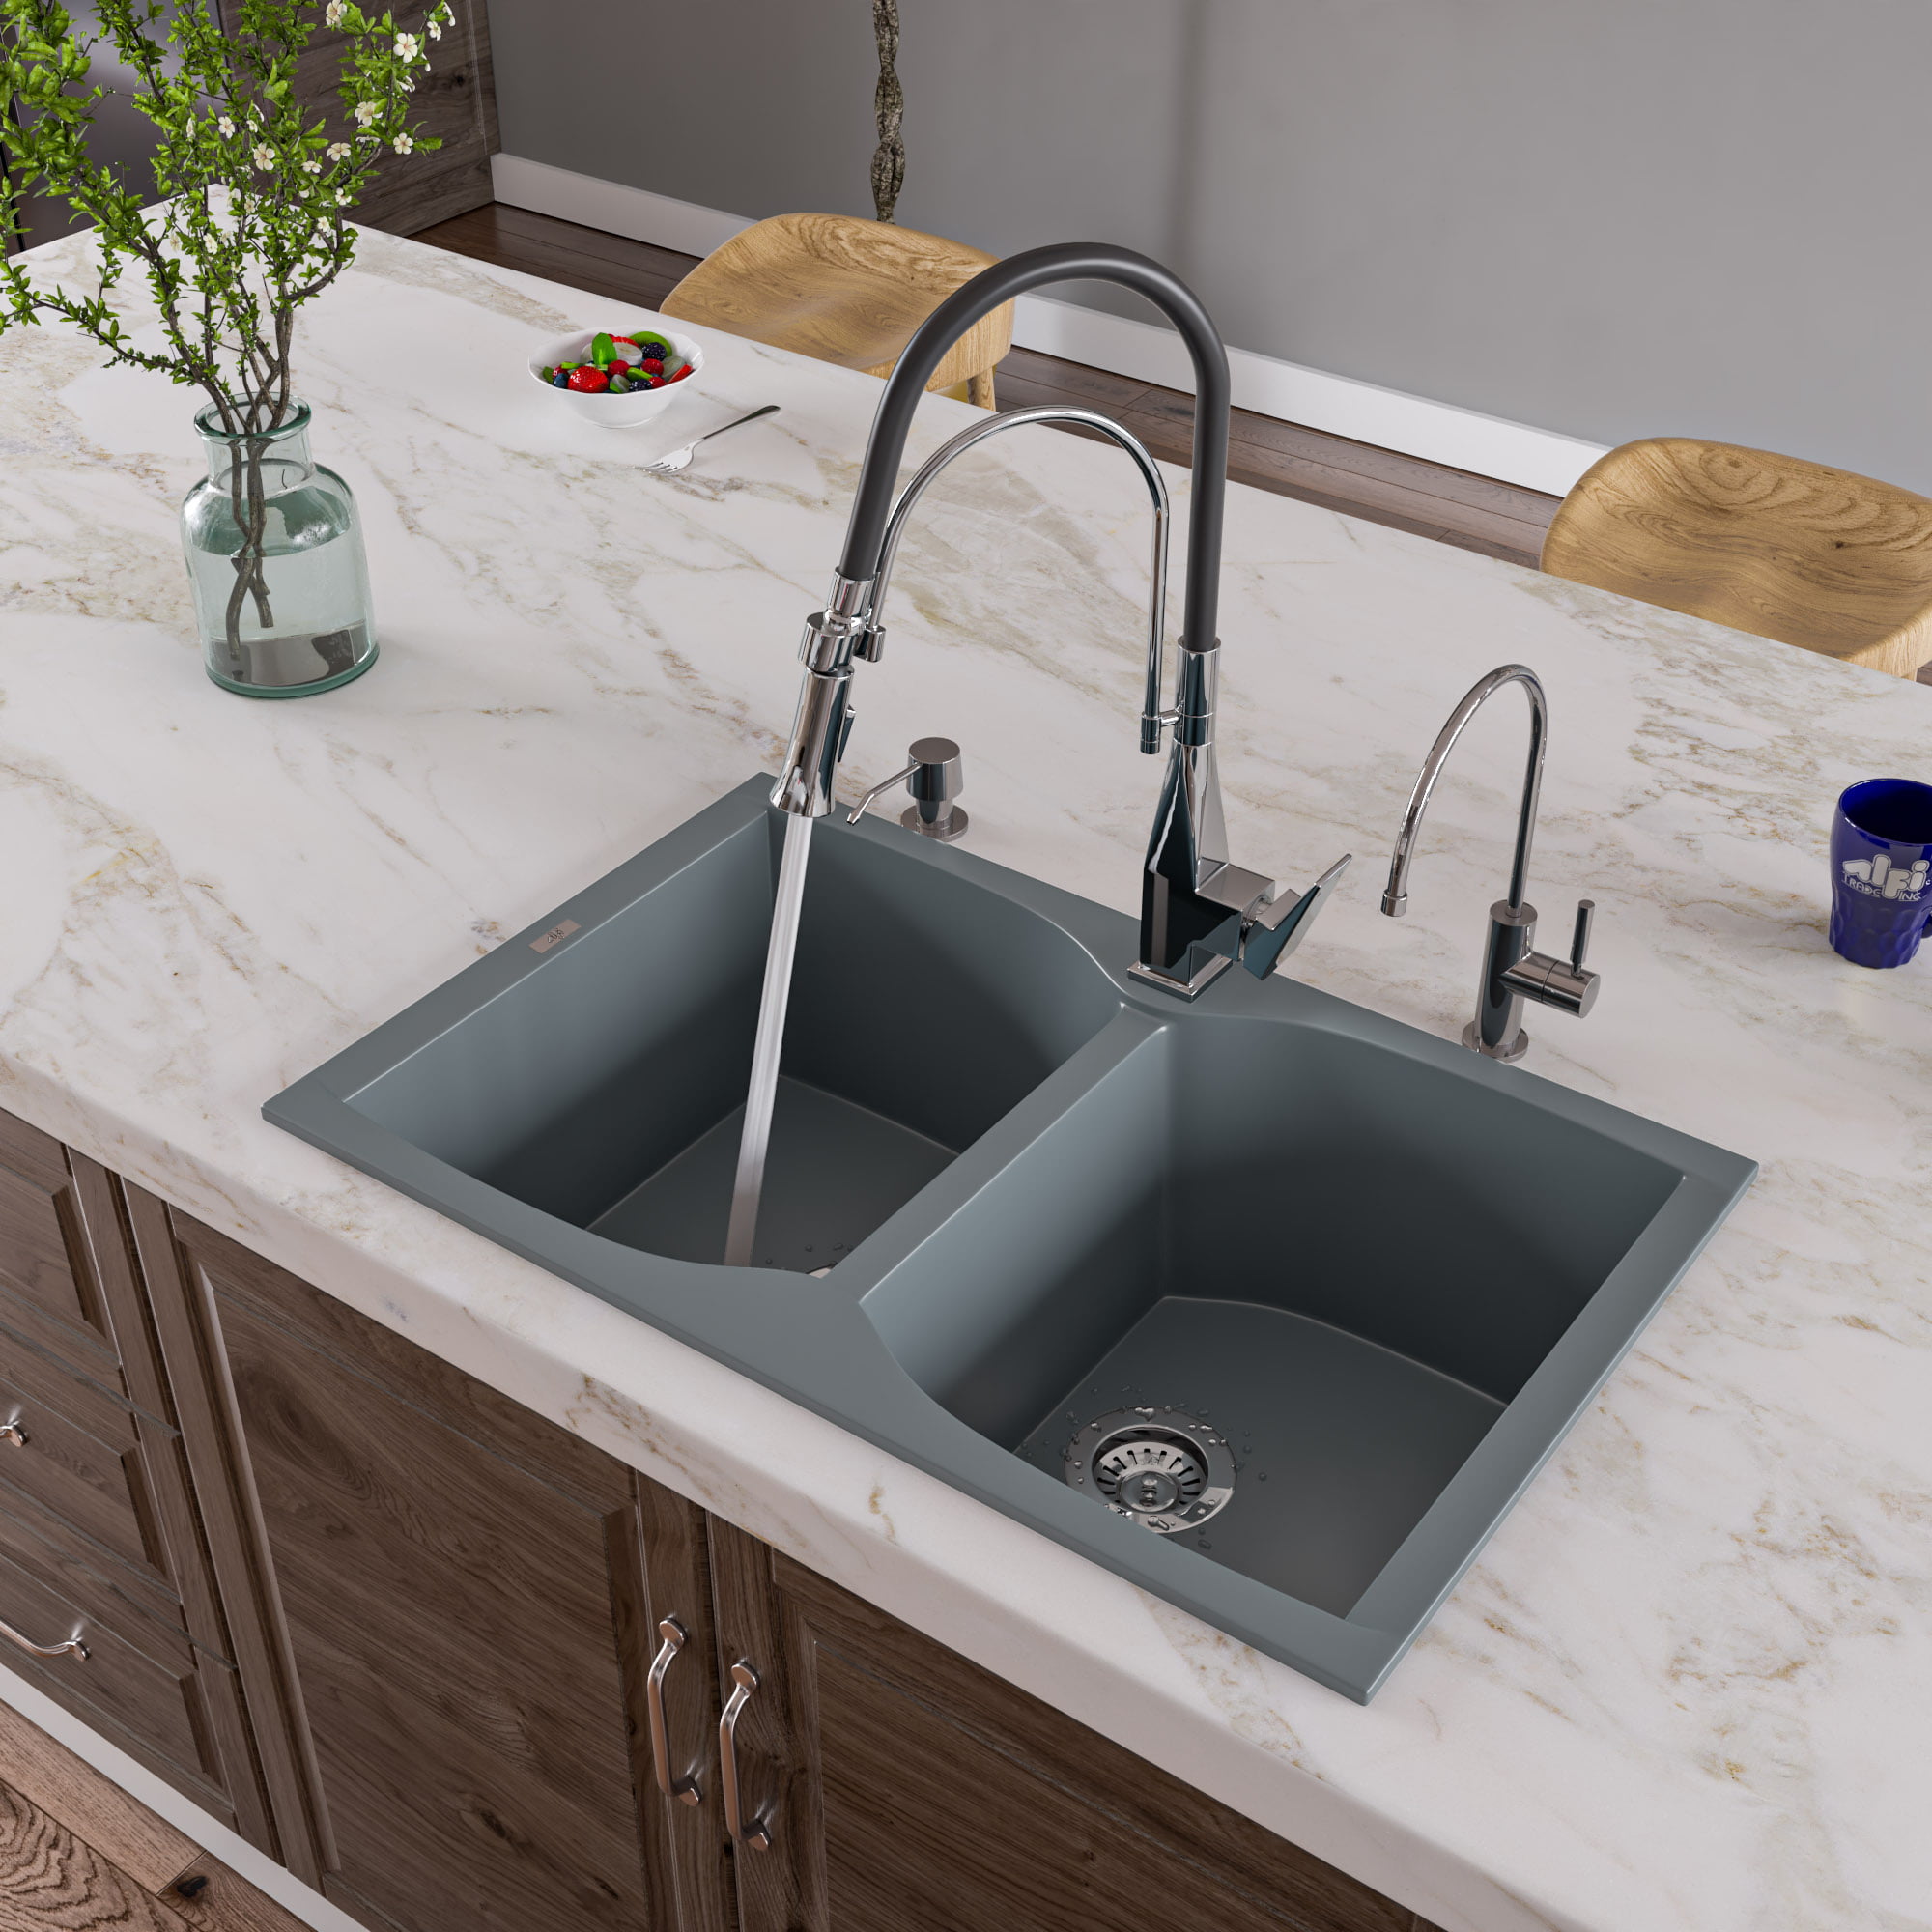 Picture of Alfi Brand AB3220DI-T Titanium 32 in. Drop-In Double Bowl Granite Composite Kitchen Sink